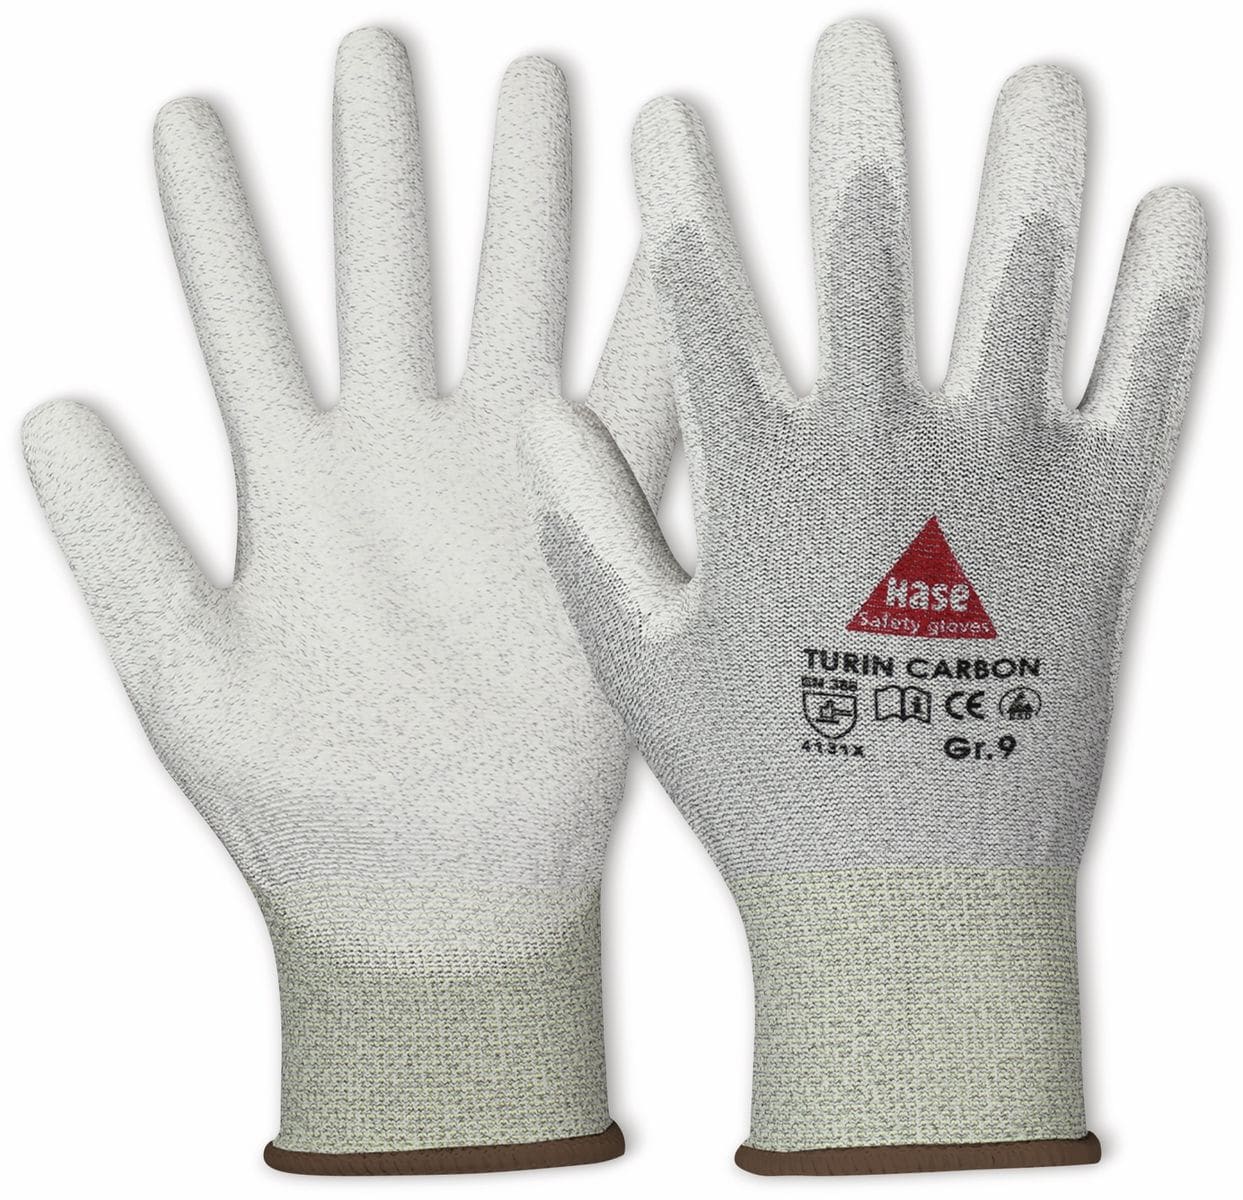 HASE SAFETY GLOVES Montagehandschuh, TURIN CARBON, EN 388, EN 420, antistatisch, Größe 7, grau/weiß von Hase Safety gloves